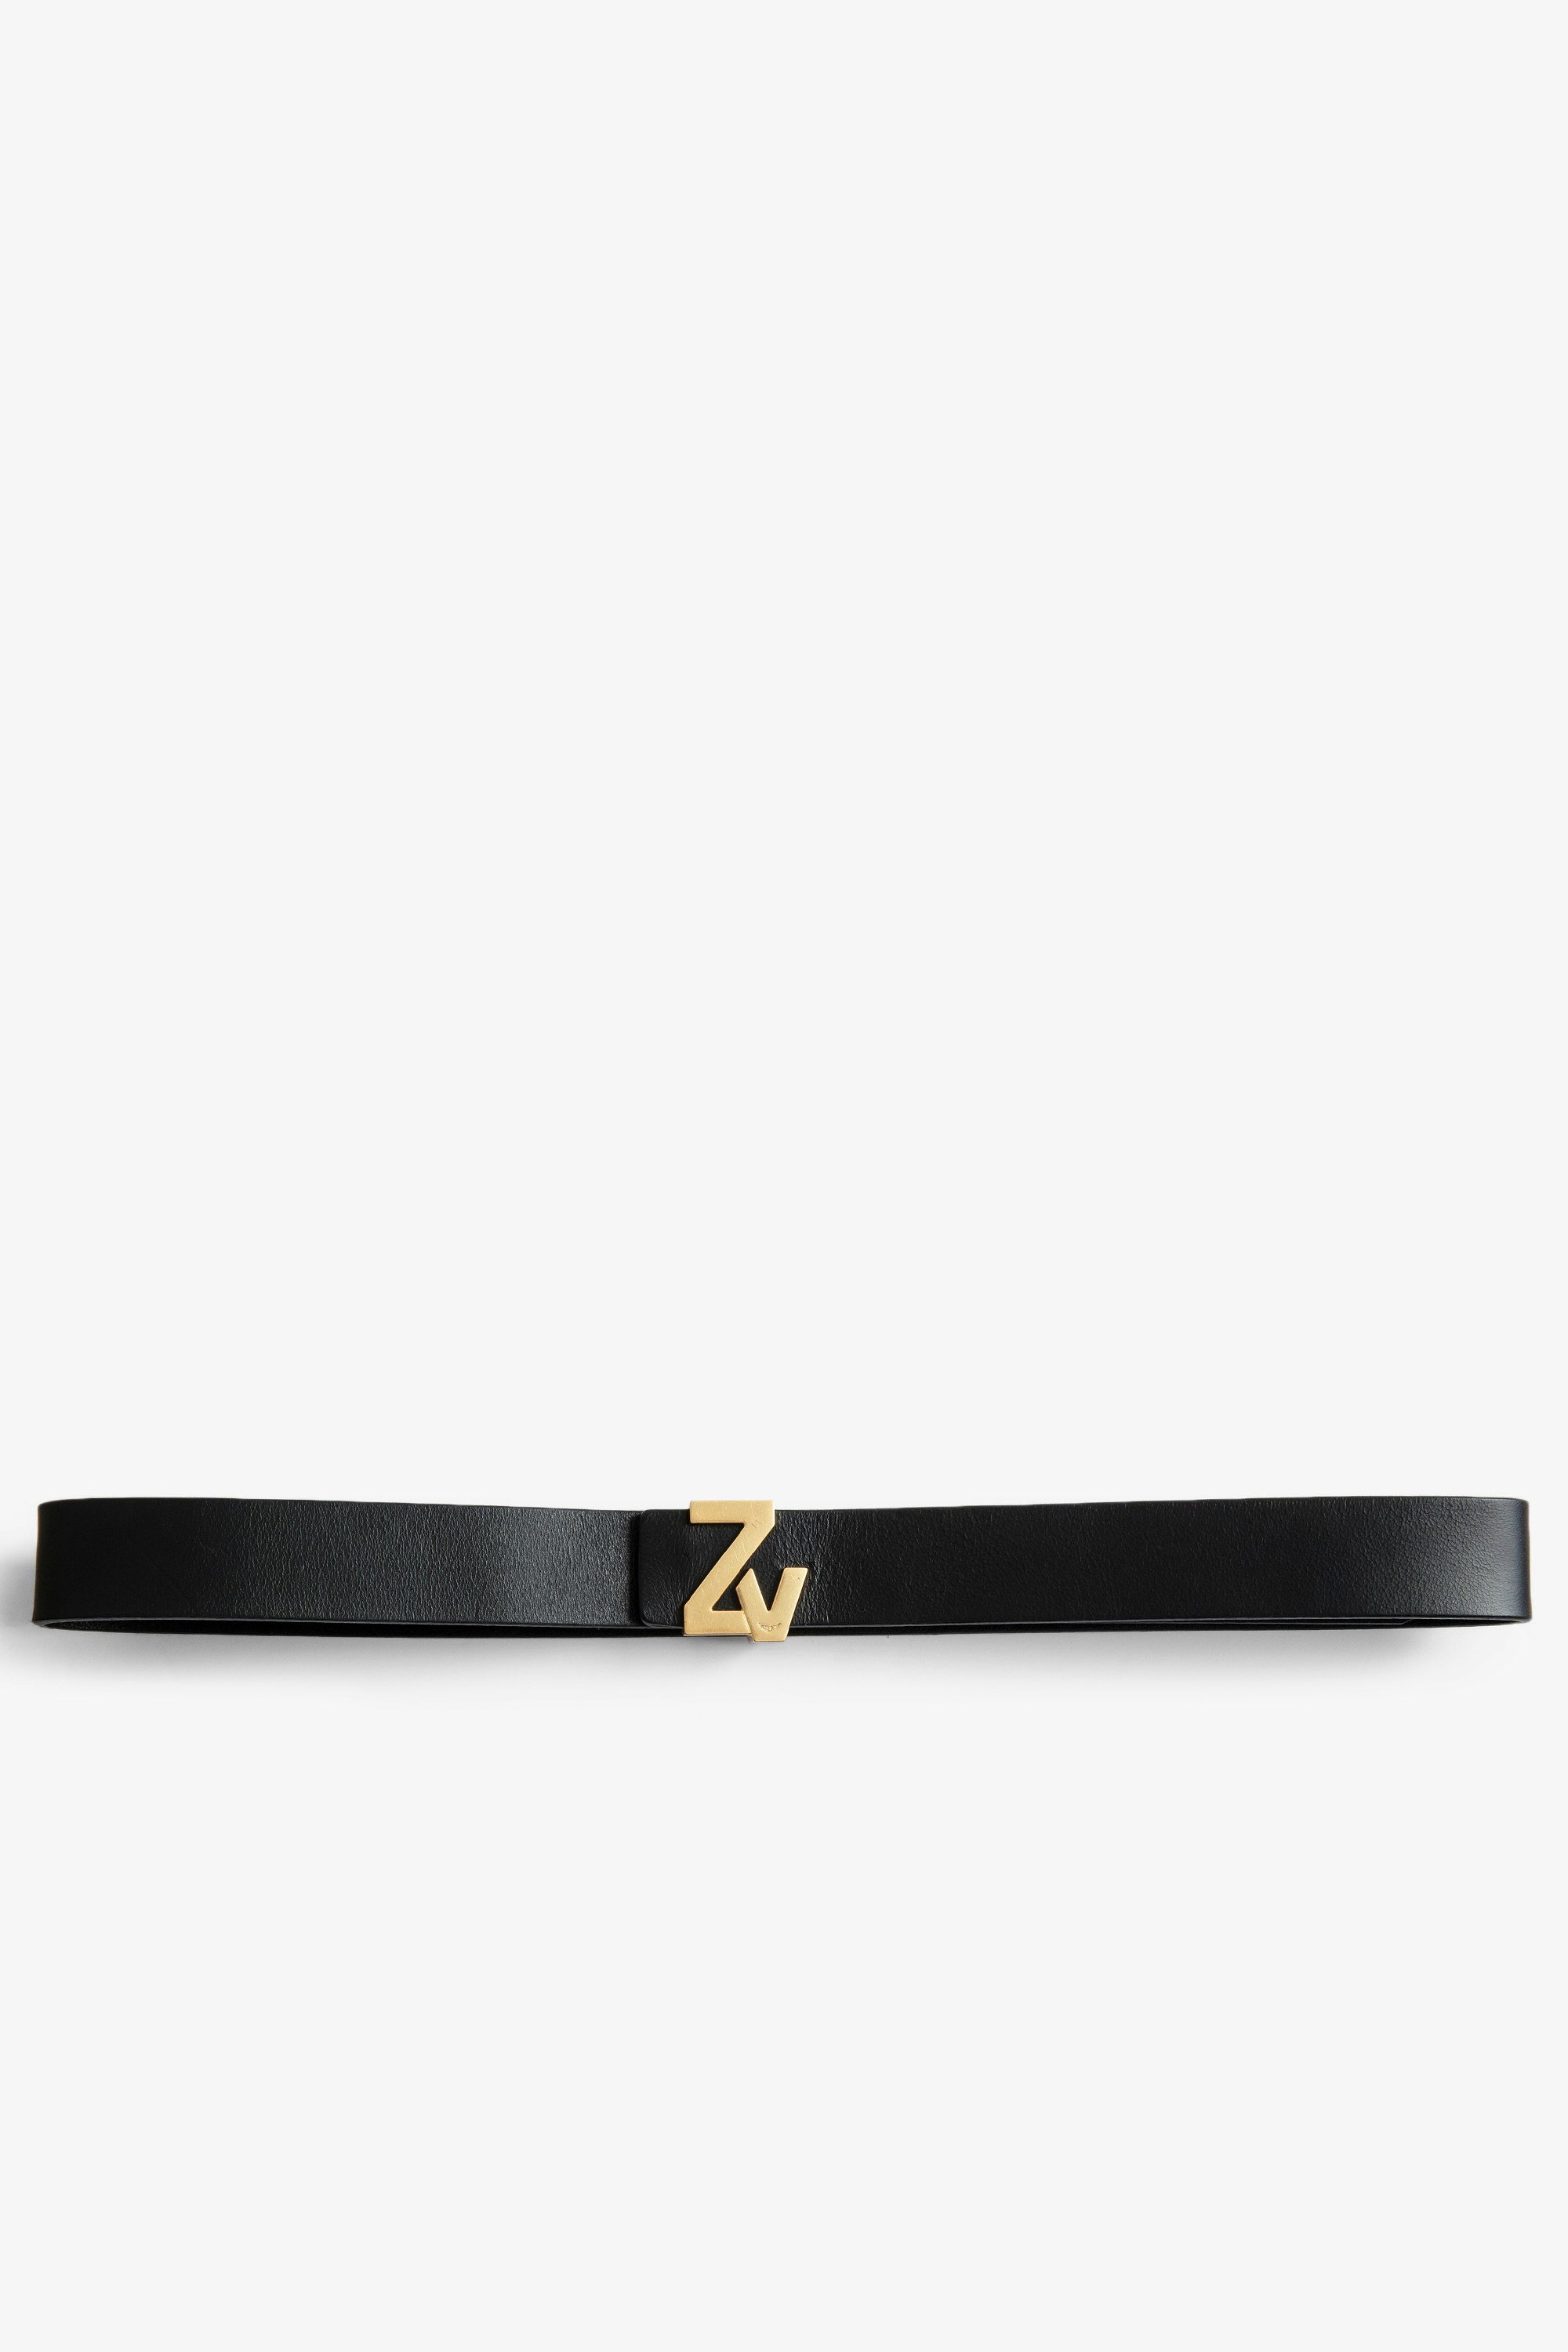 La Mini ベルト ZV Initiale ベルト - Women’s ZV Initiale black leather belt